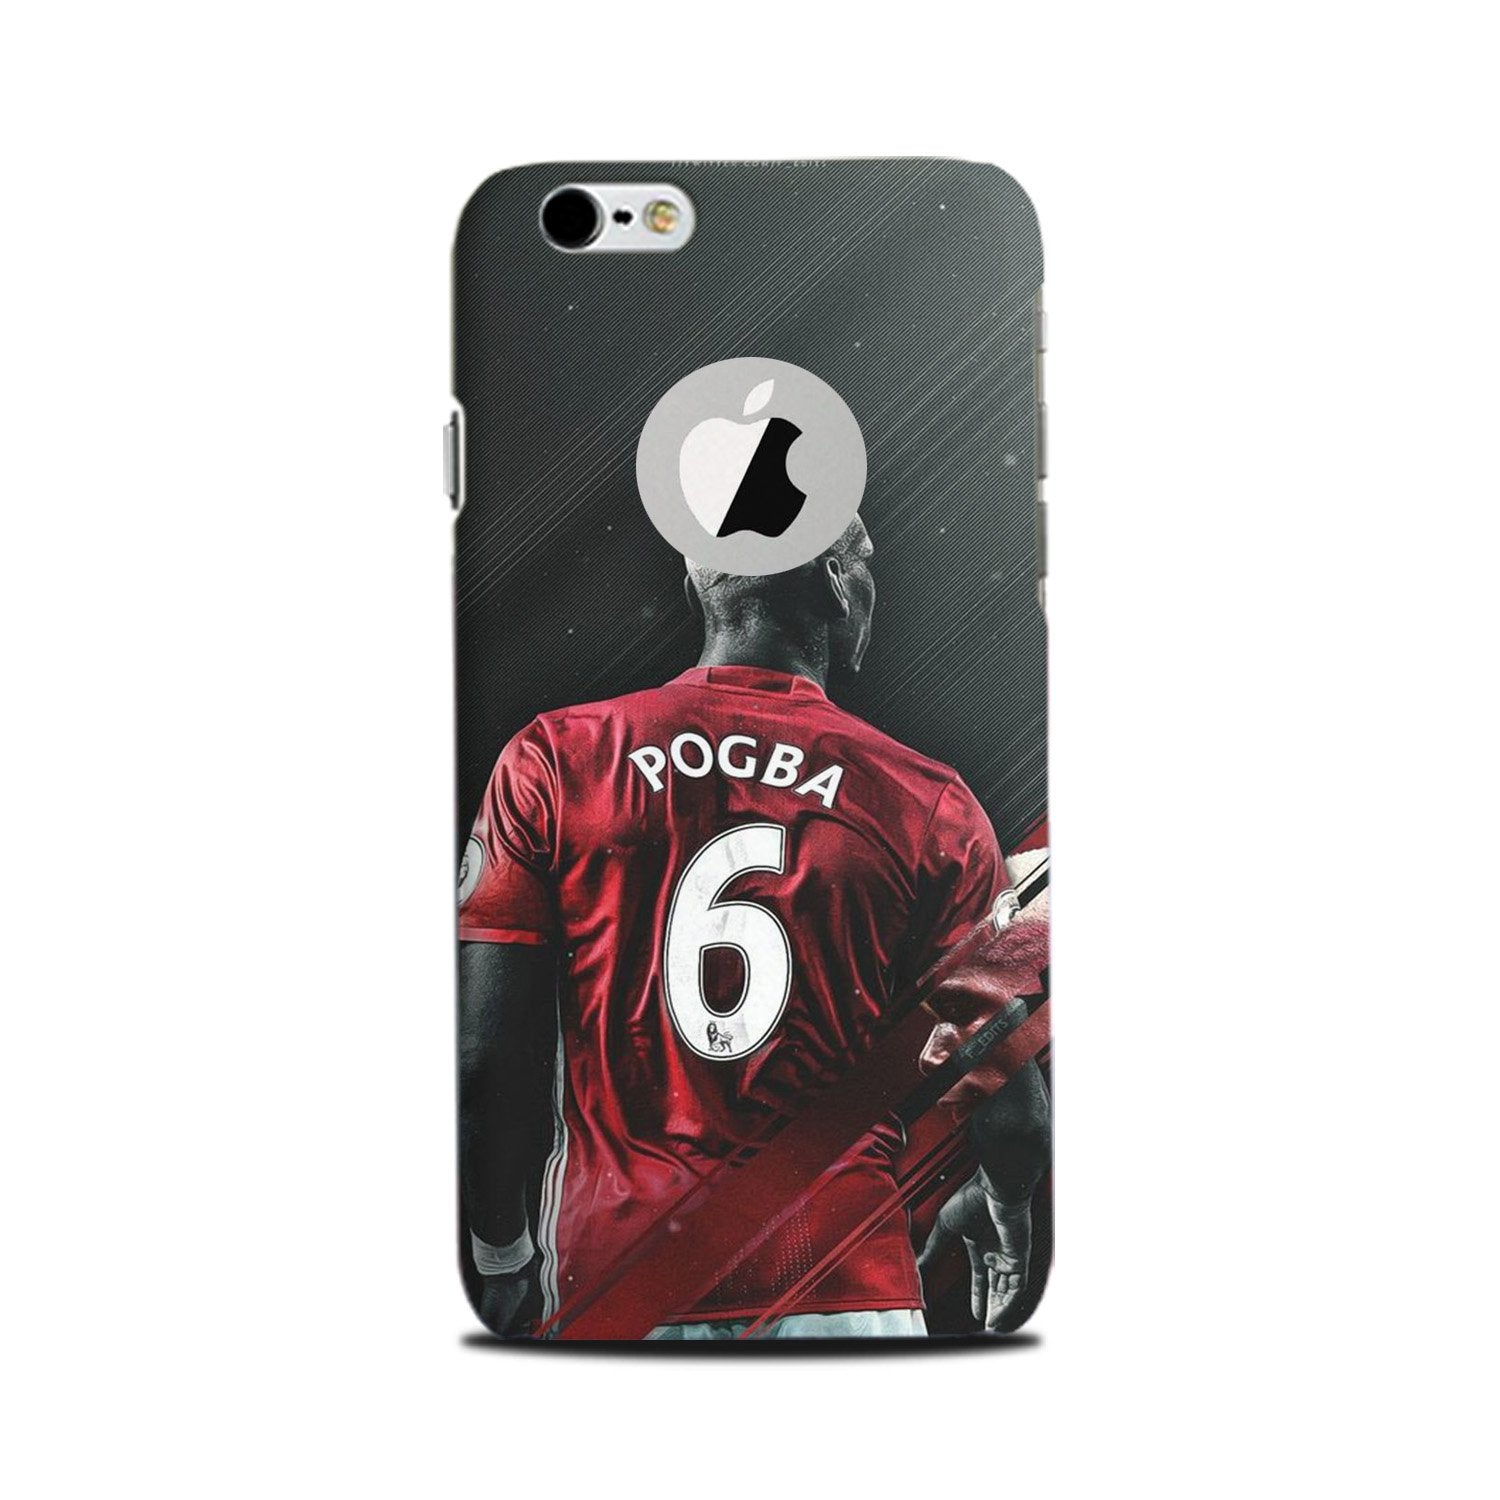 Pogba Case for iPhone 6 Plus / 6s Plus logo cut   (Design - 167)